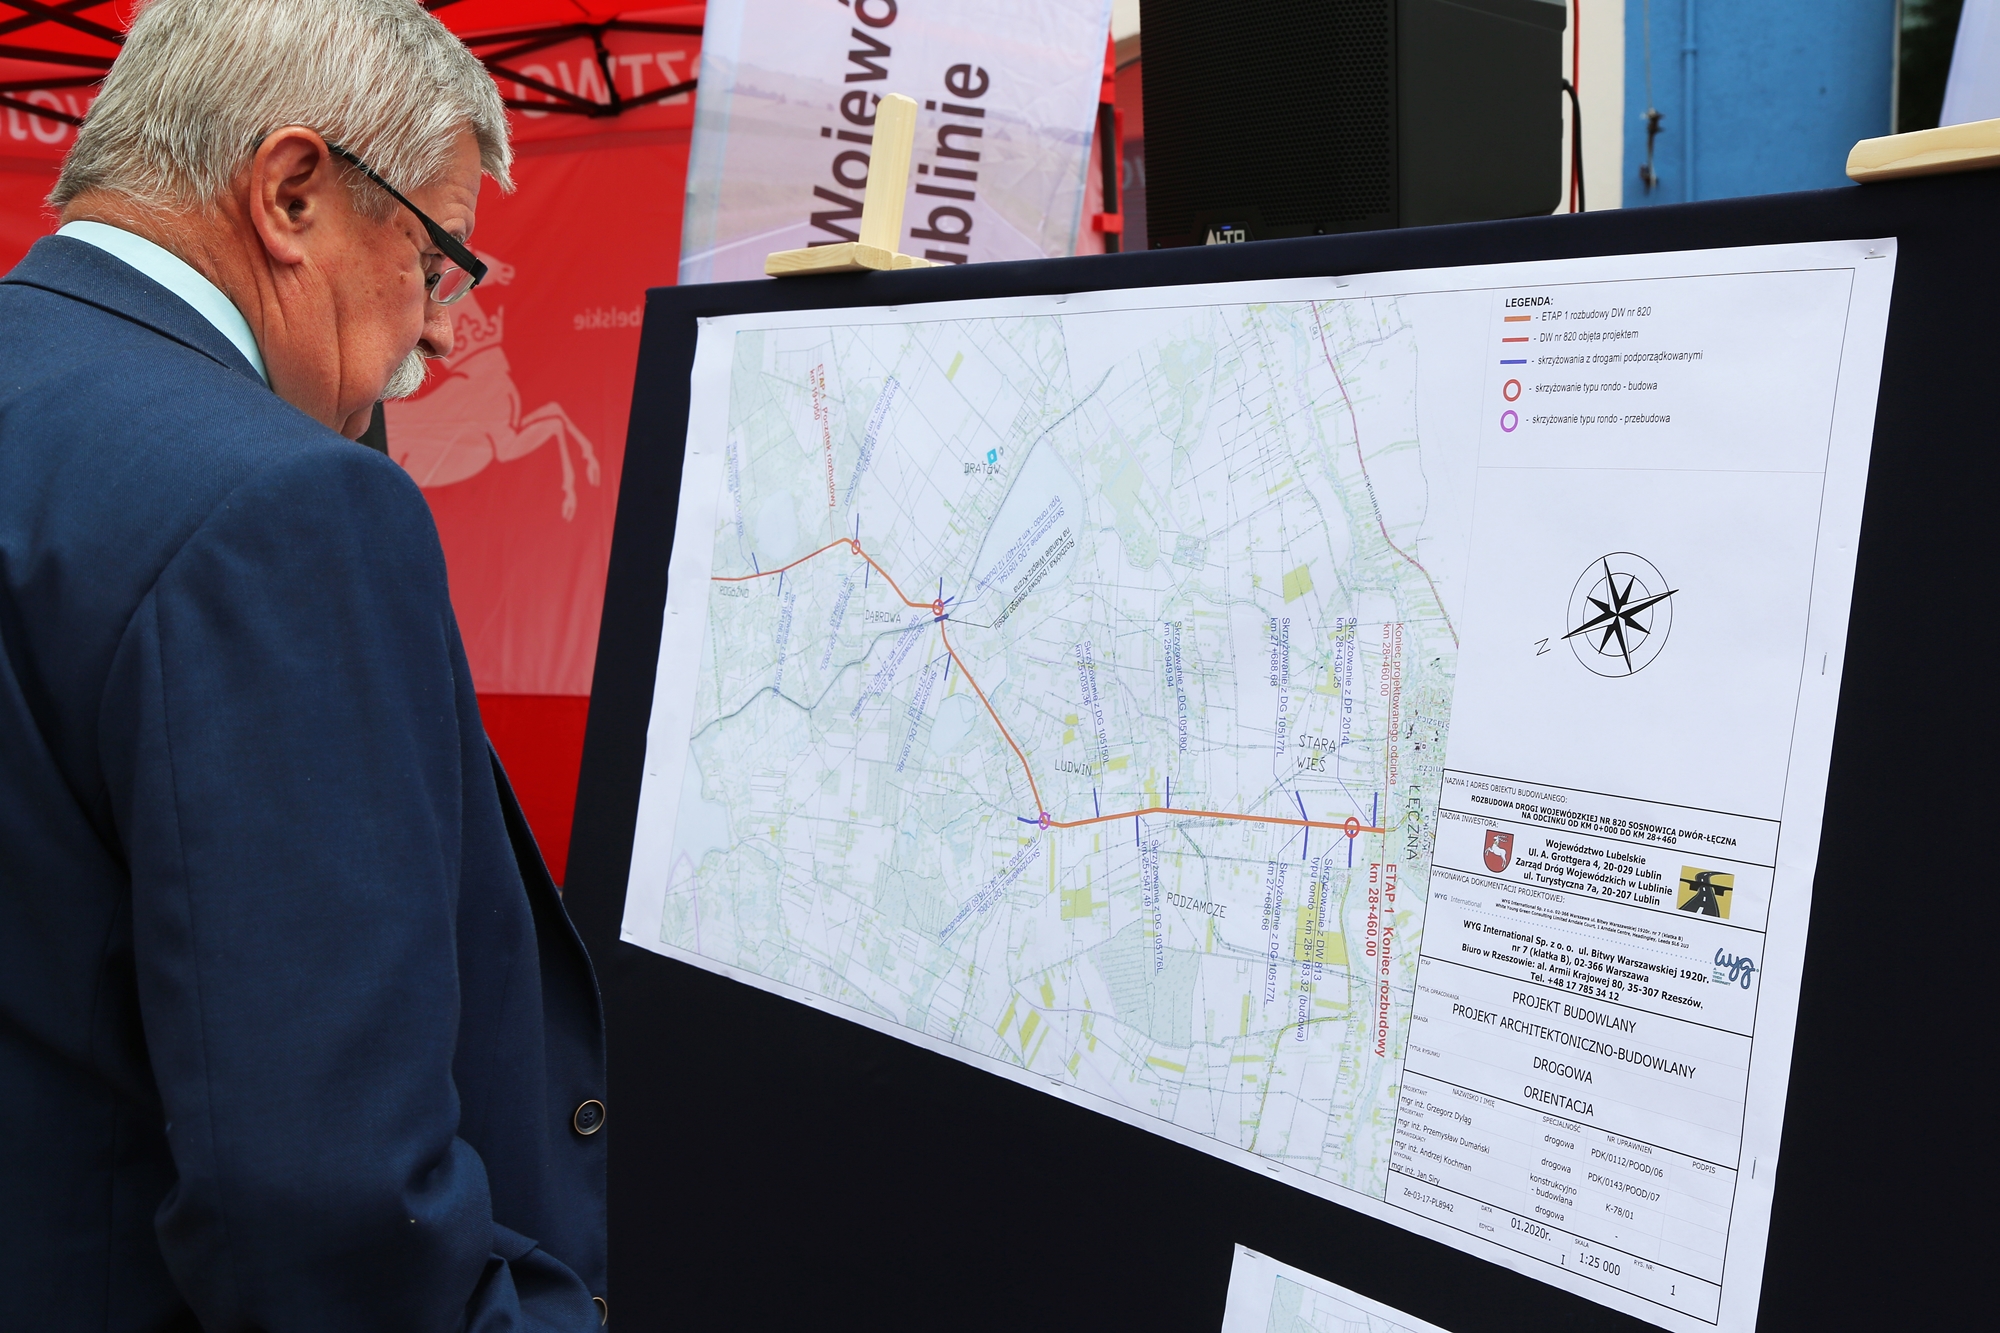 Na zdjęciu widzimy oglądającego mapę z przebiegiem drogi wojewódzkiej numer 820 mieszkańca gminy Ludwin